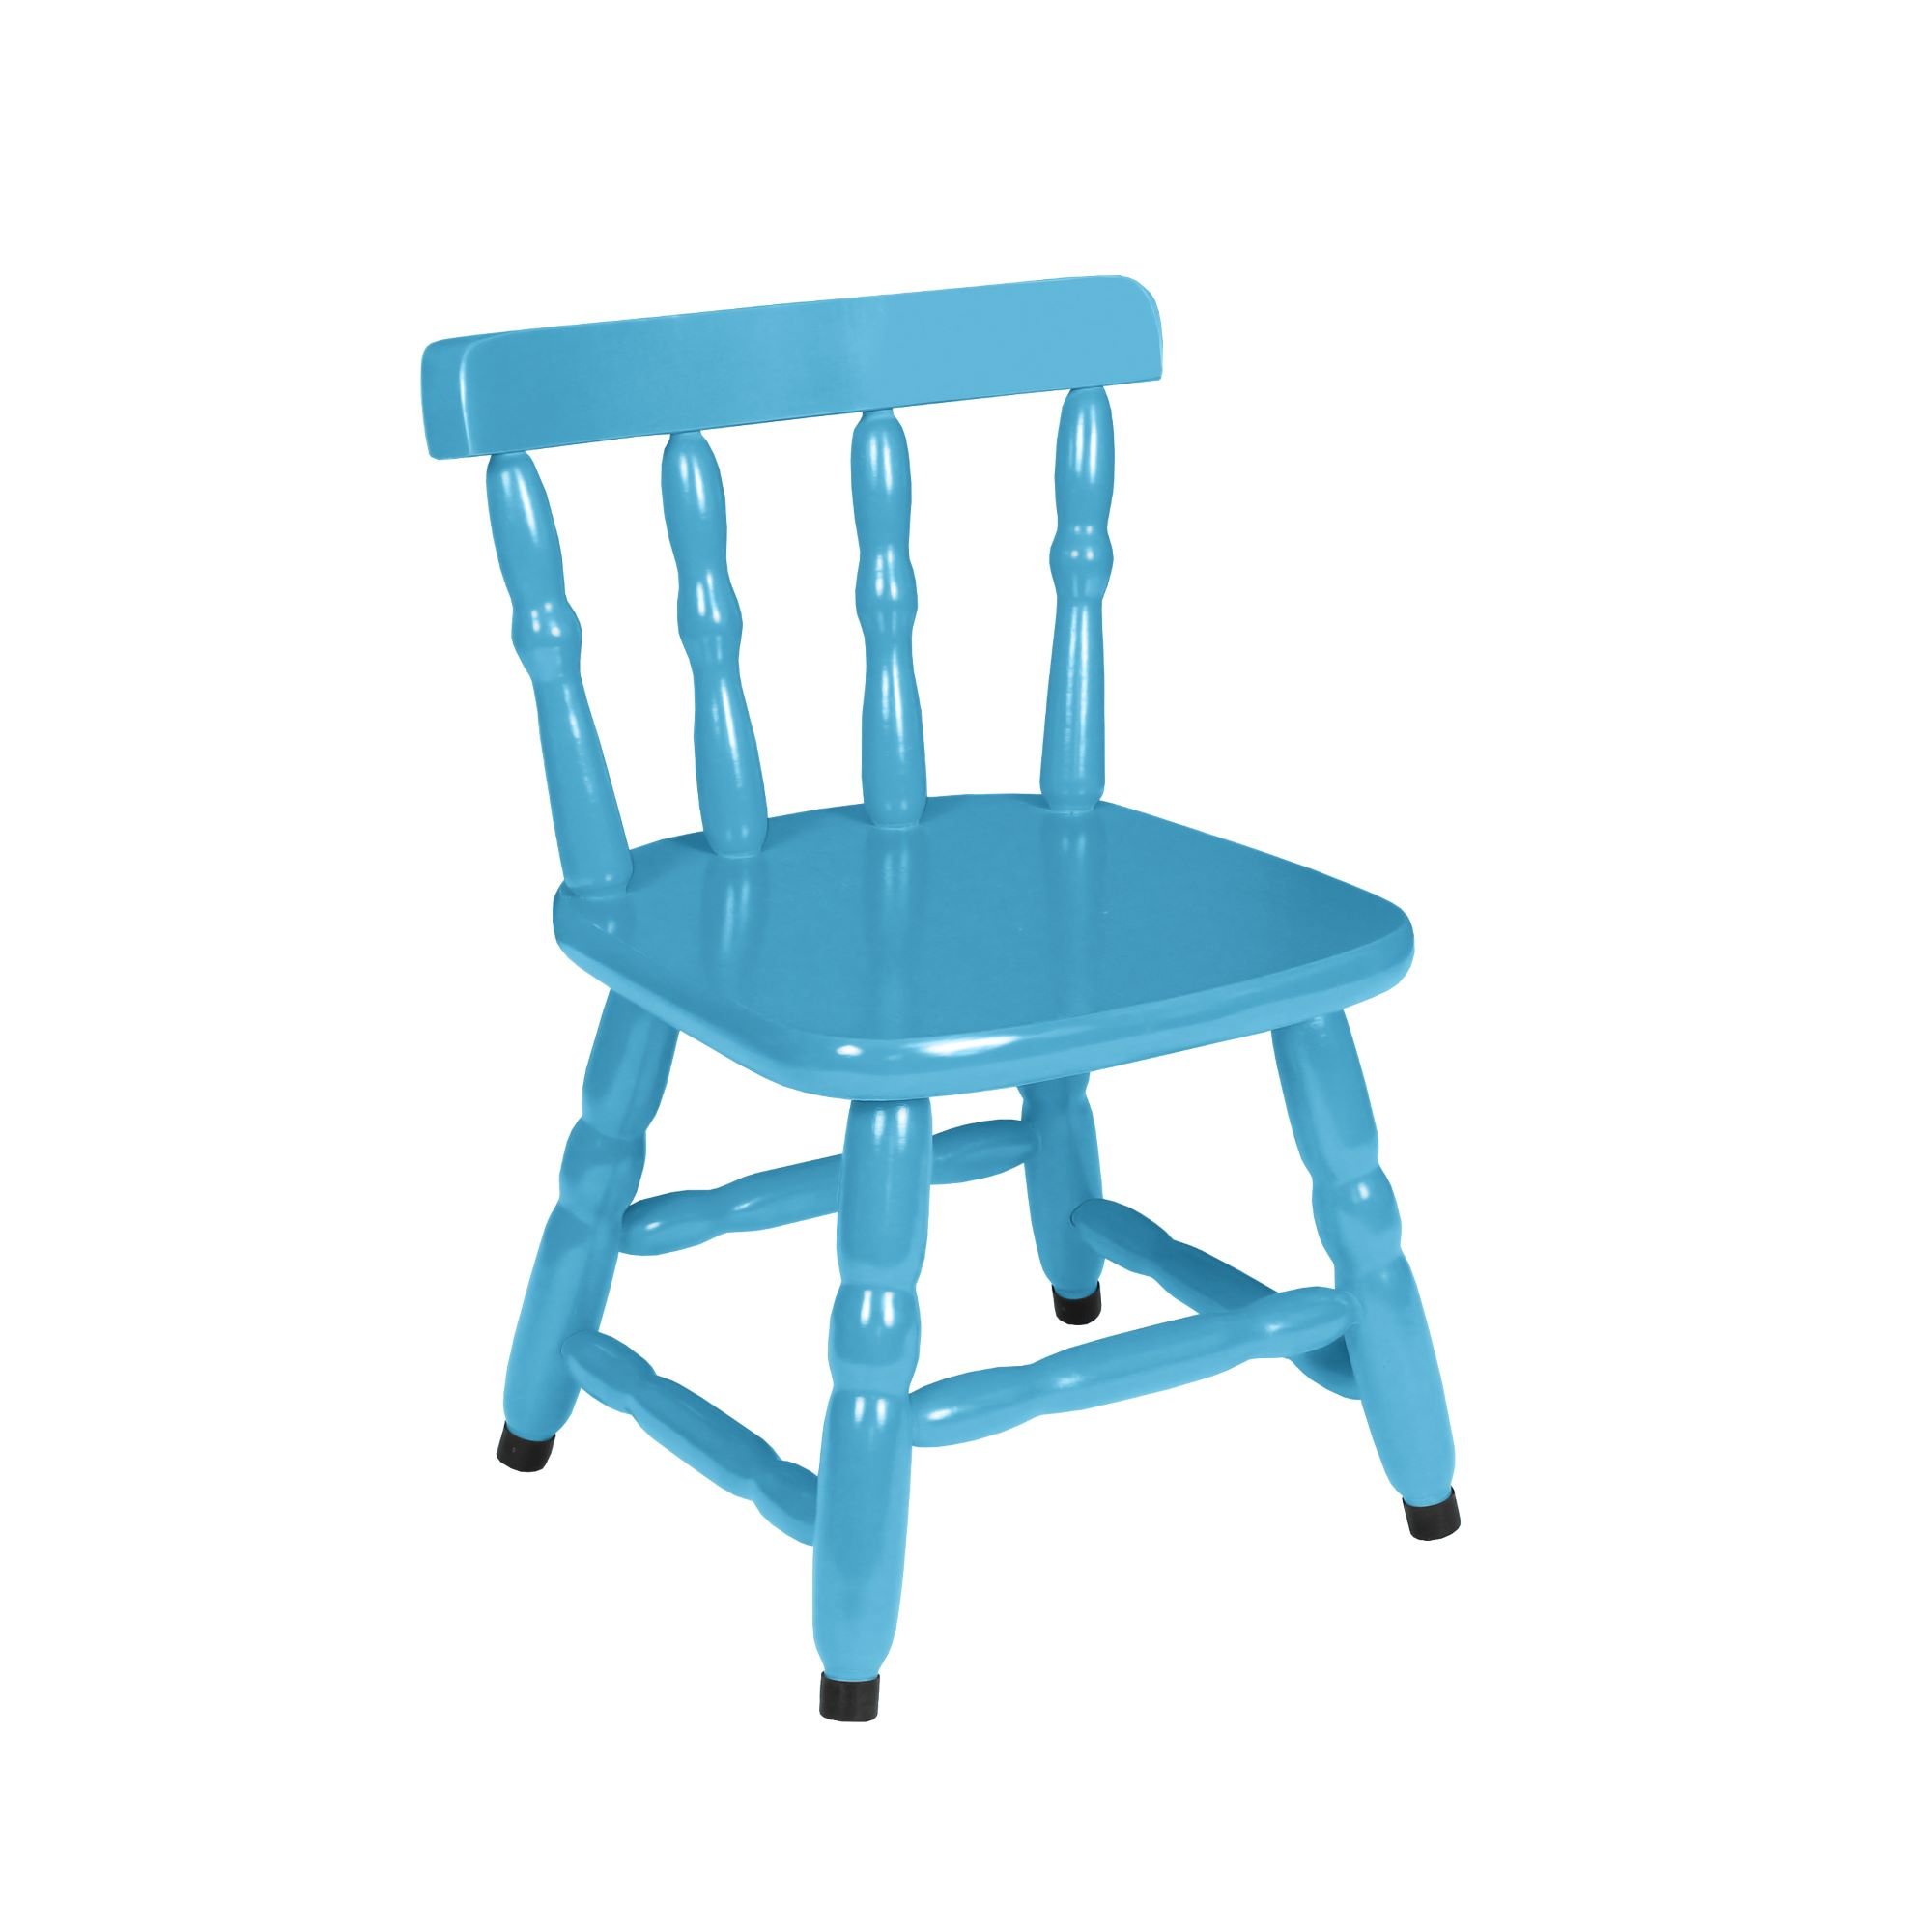 Conjunto Infantil Mesa com 4 Cadeiras - Colorido - 5